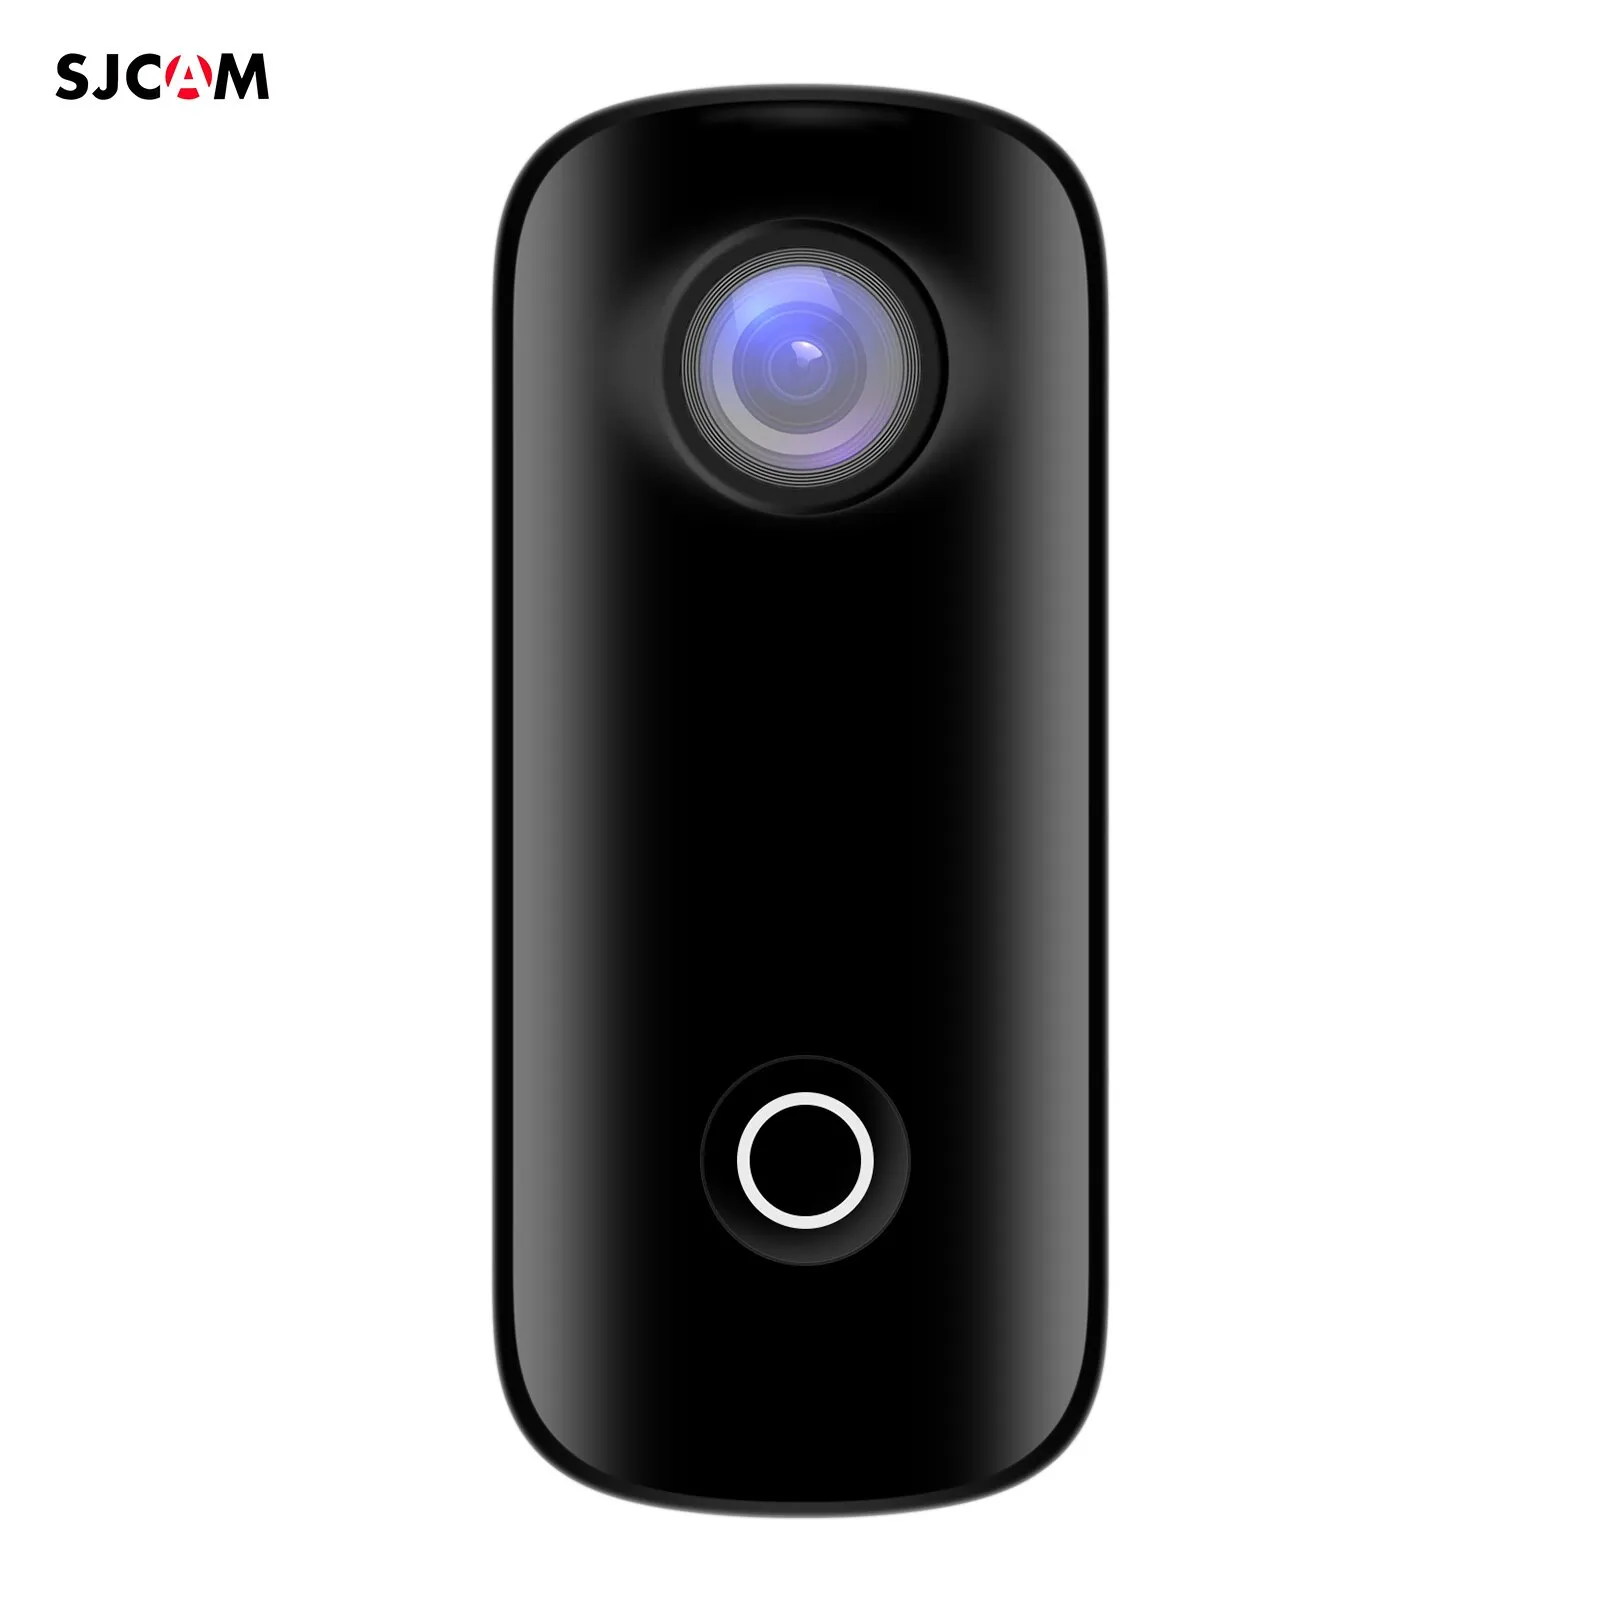 SJCAM C100+ Mini Action Camera 2K 30fps Videocamera digitale 30M Impermeabile Corpo magnetico Batteria ricaricabile incorporata WiFi